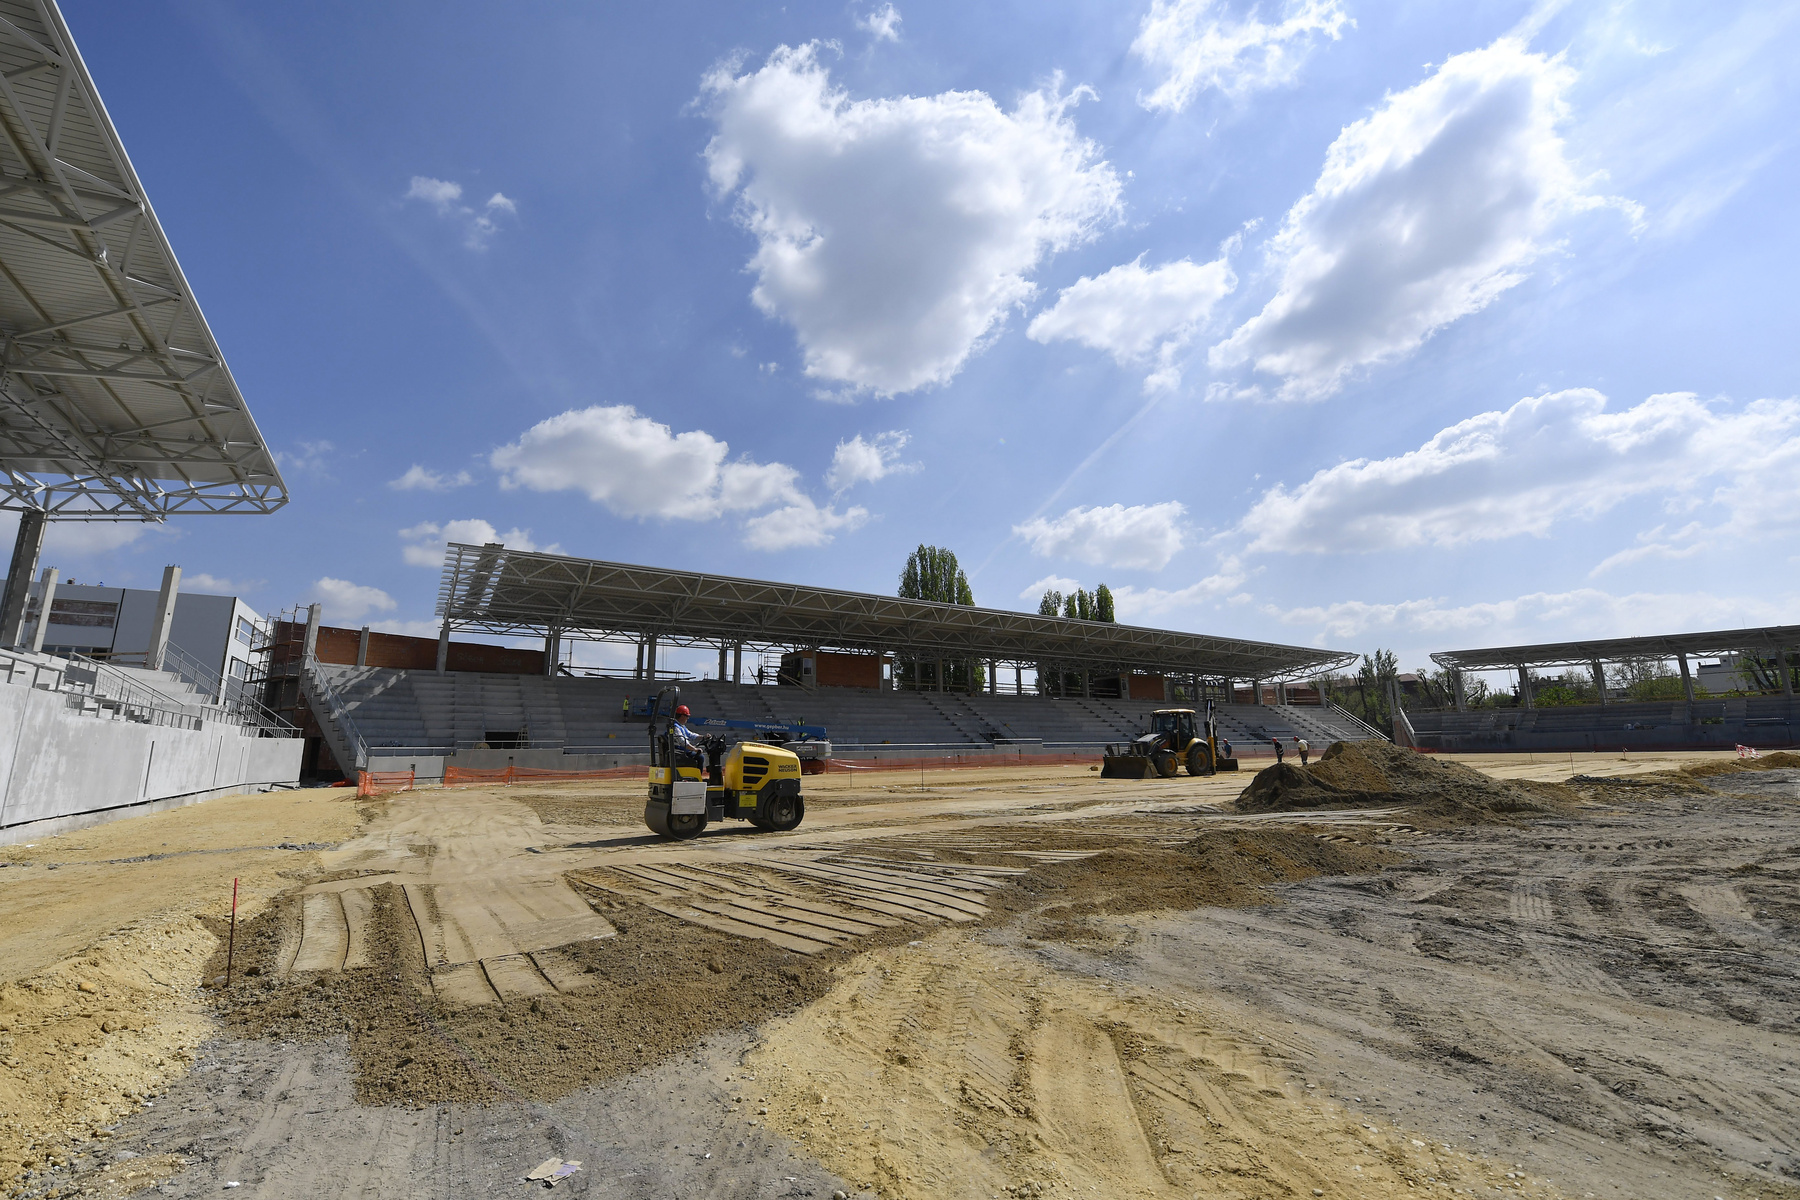 A munkálatokat 2017 tavaszán kezdték, vagyis bő 1,5 év alatt készülhet majd el a stadion.